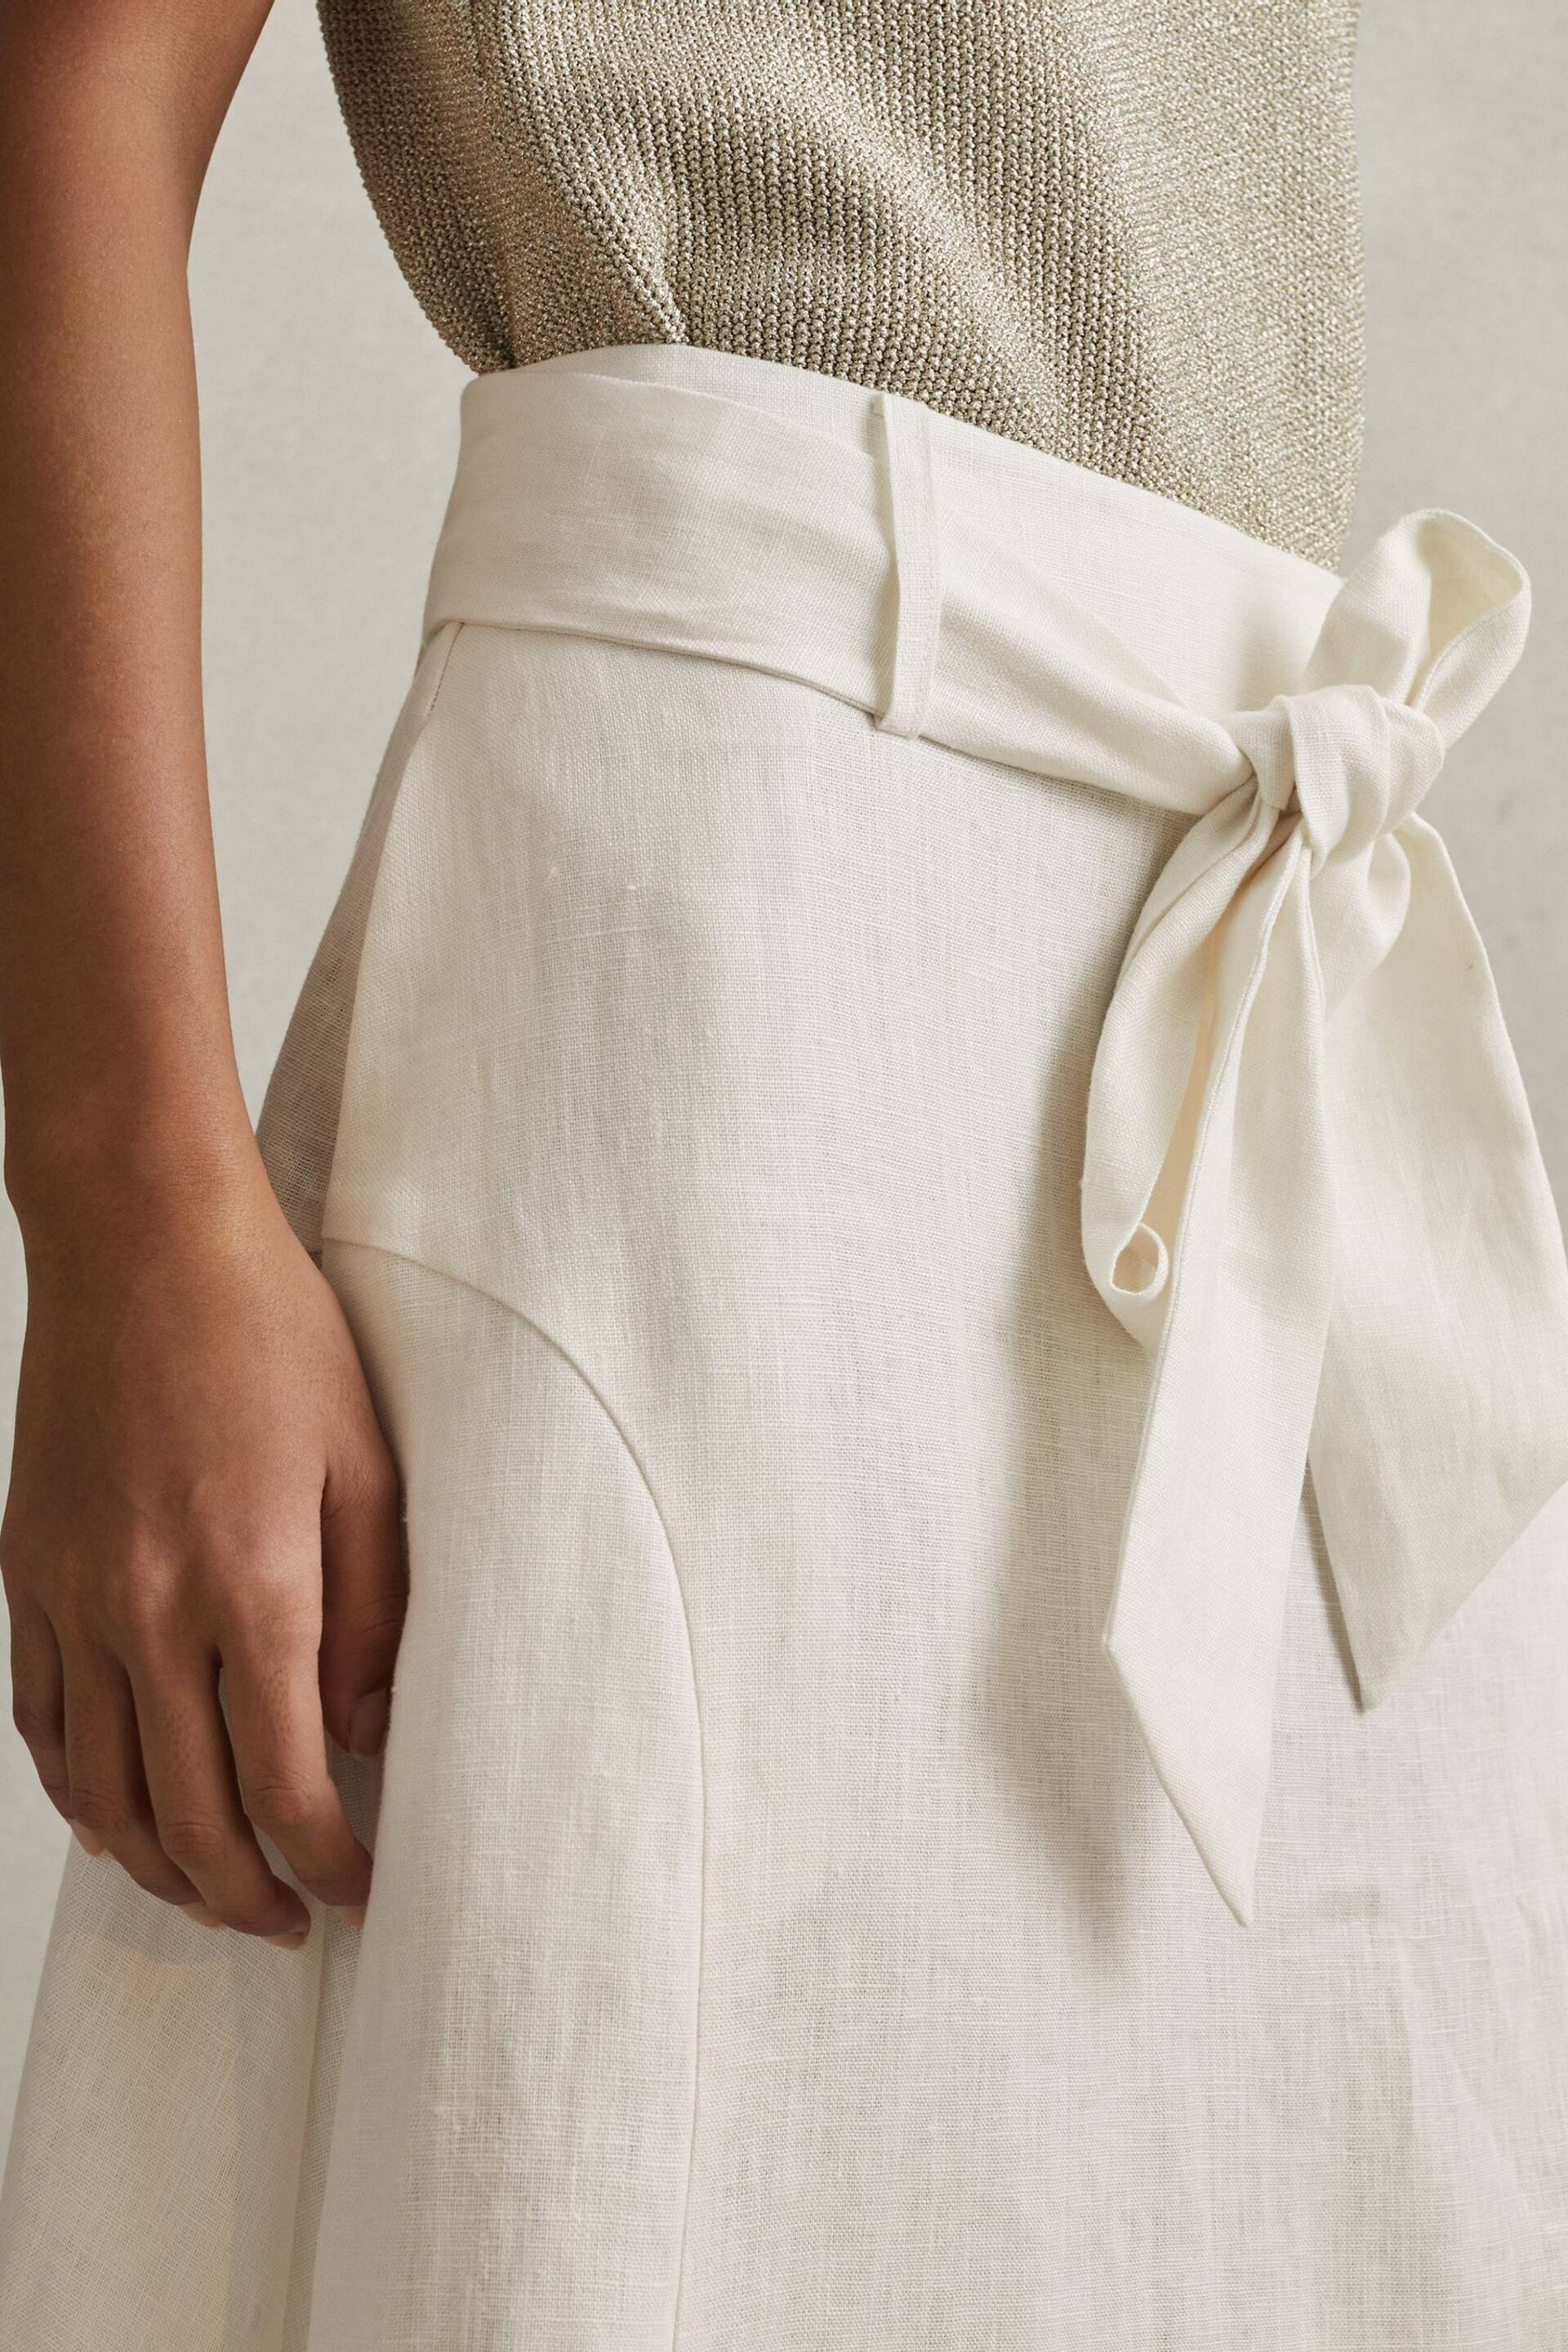 Reiss White Abigail High Rise Linen Maxi Skirt - Image 3 of 6